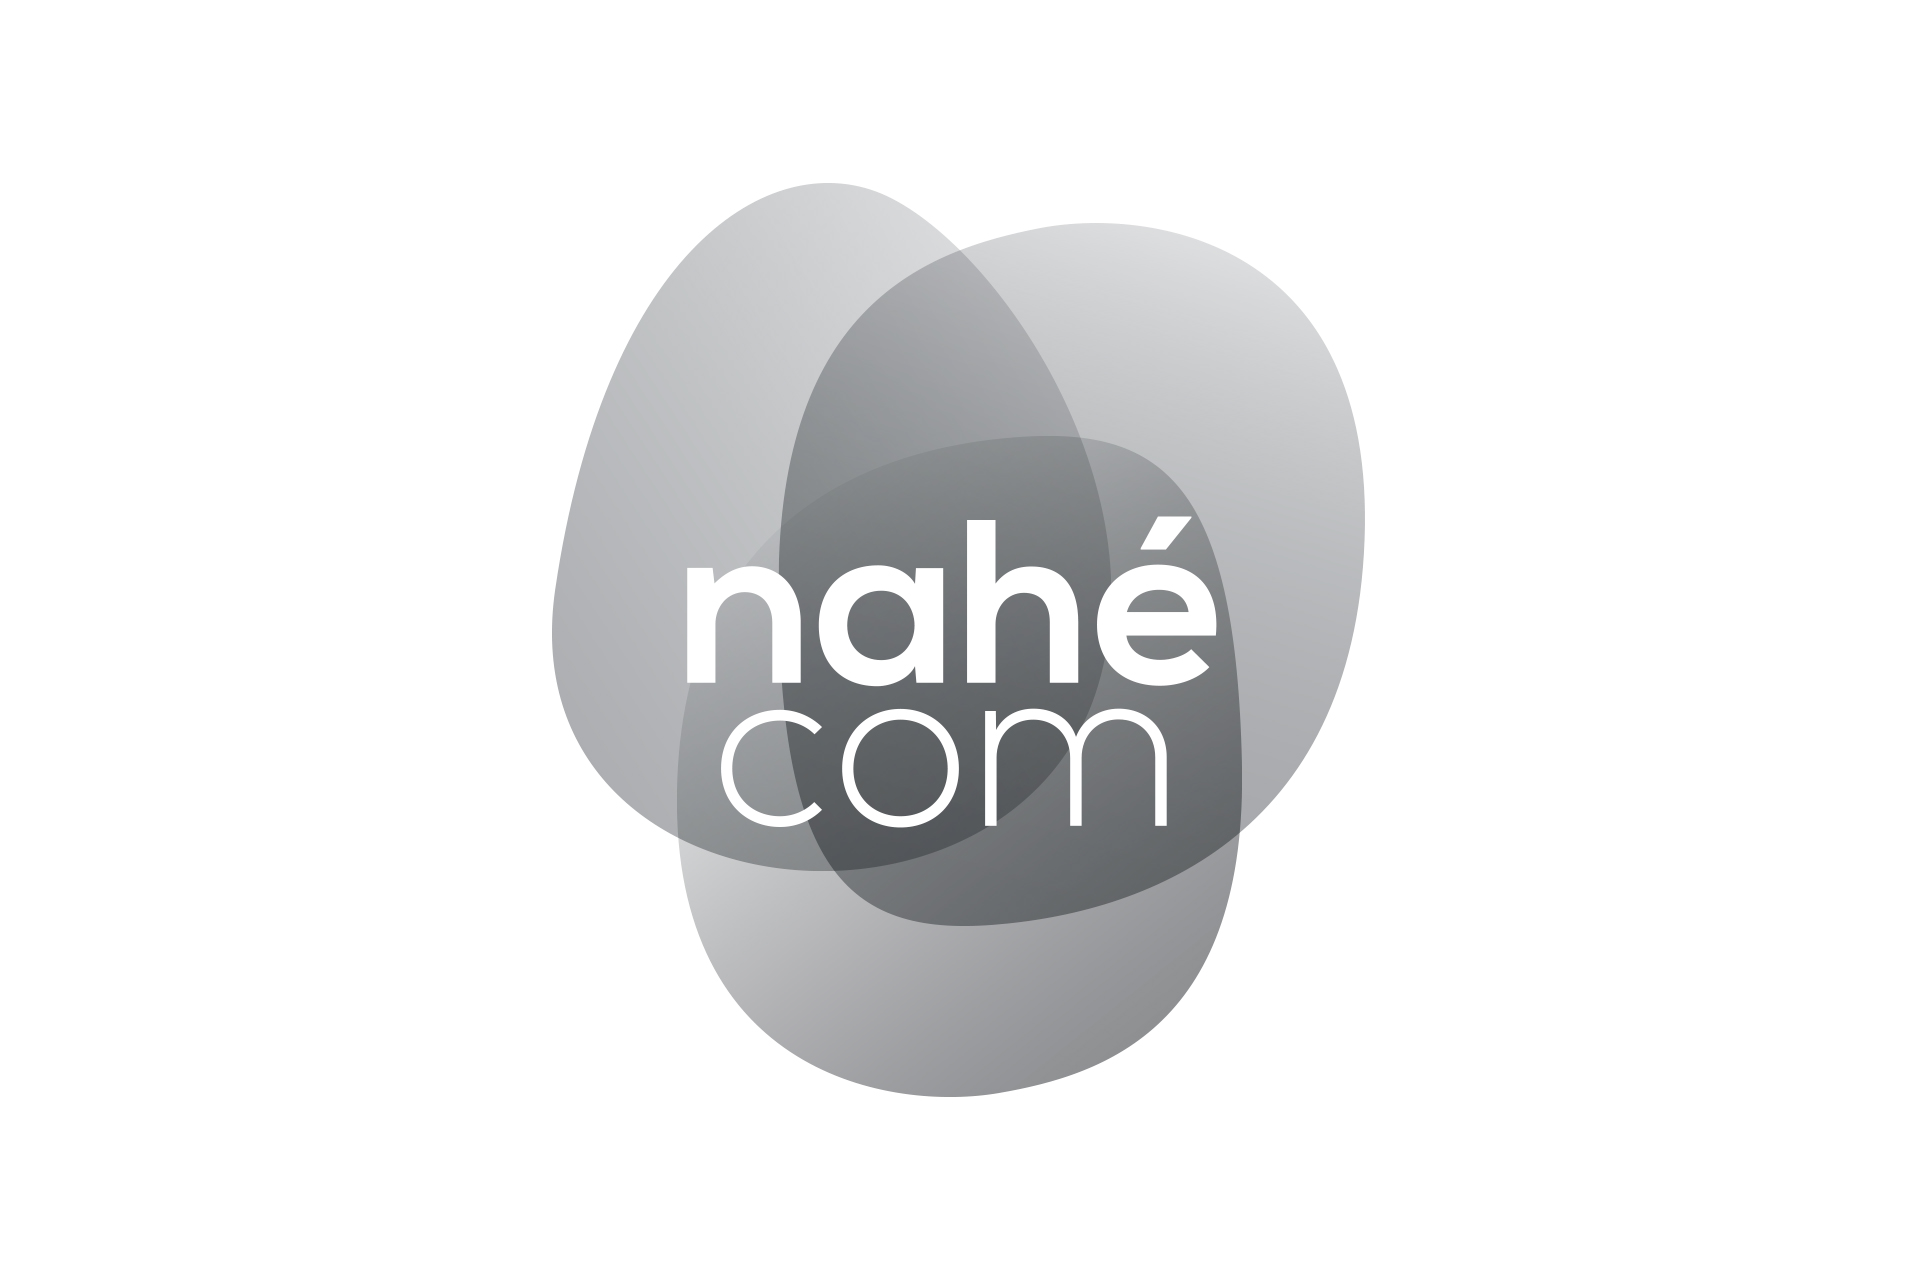 Logotype noir et blanc de l'agence Nahécom